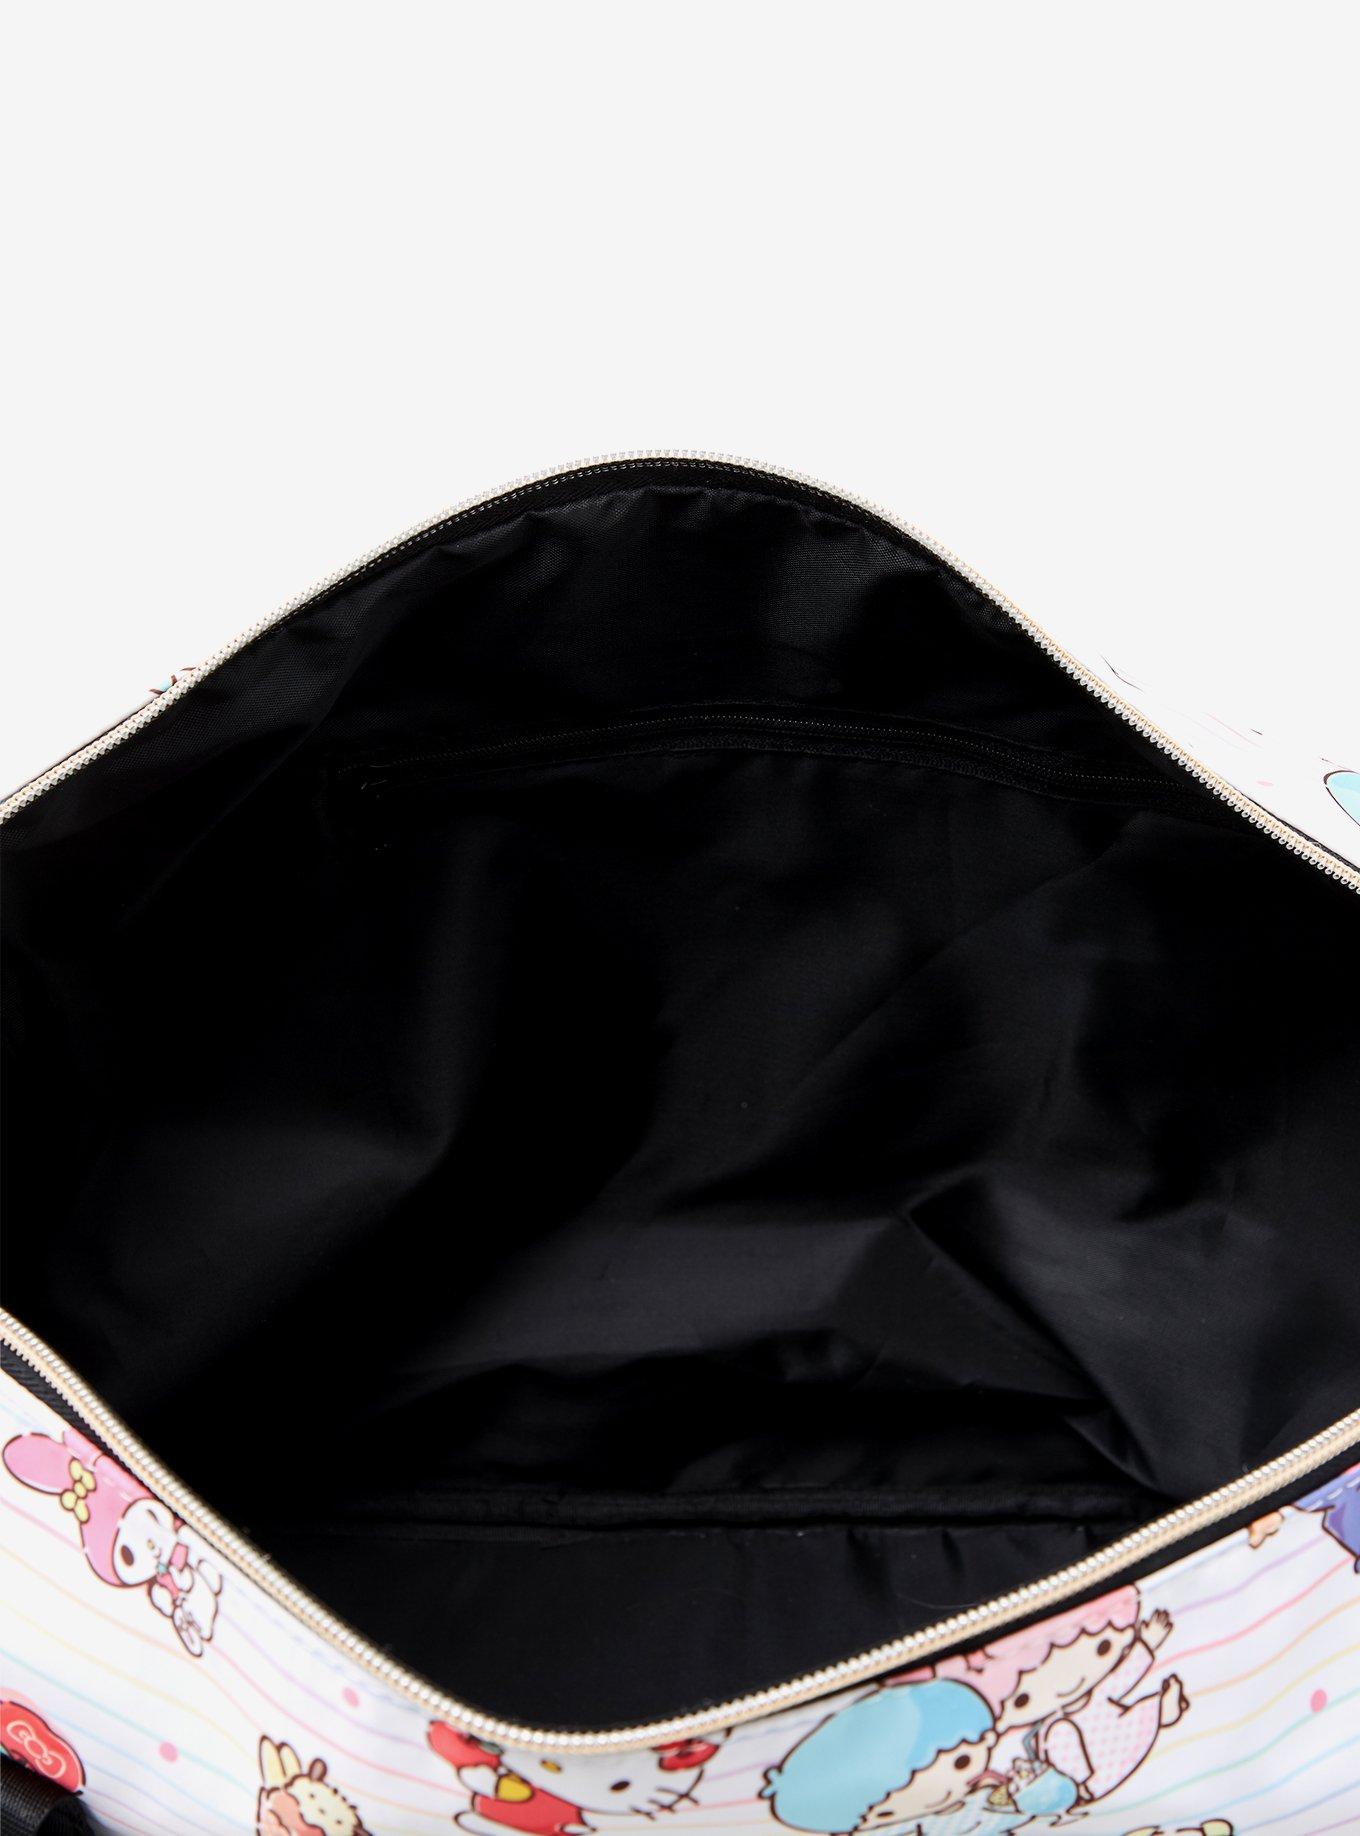 Sanrio Hello Kitty and Friends Desserts Allover Print Tote Bag, , alternate